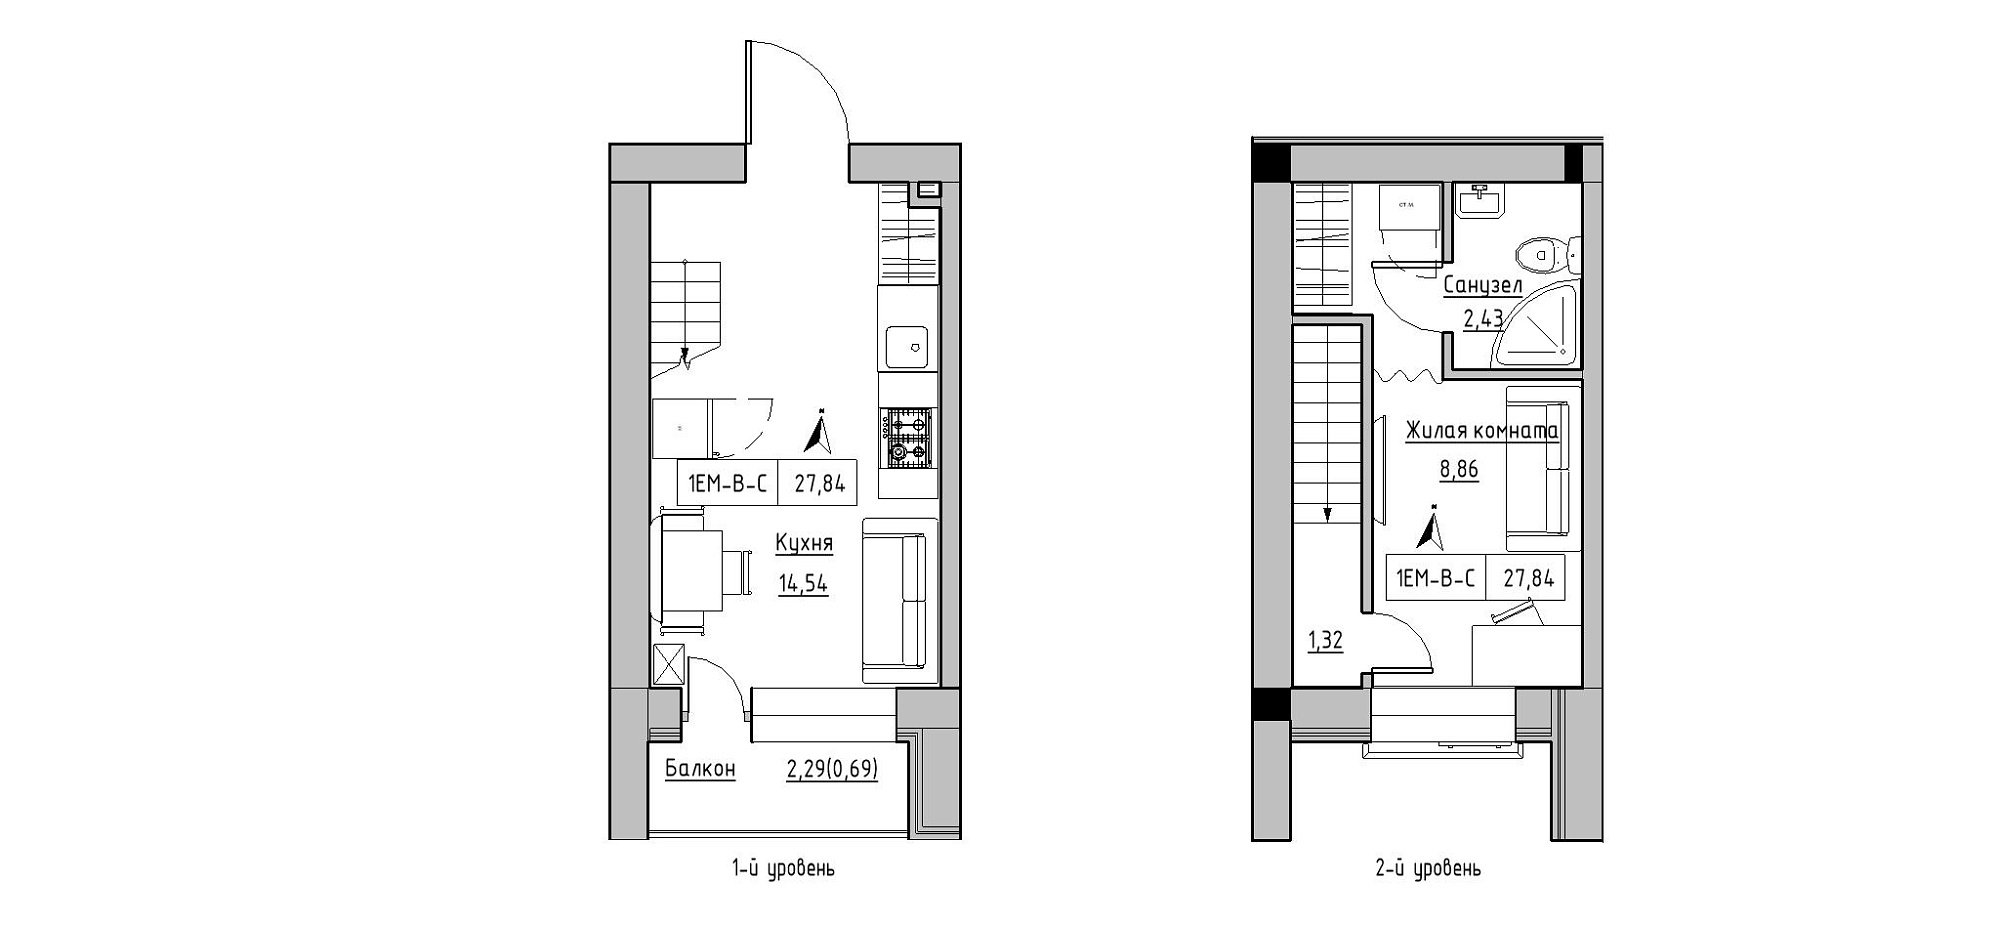 Planning 2-lvl flats area 27.84m2, KS-020-05/0010.